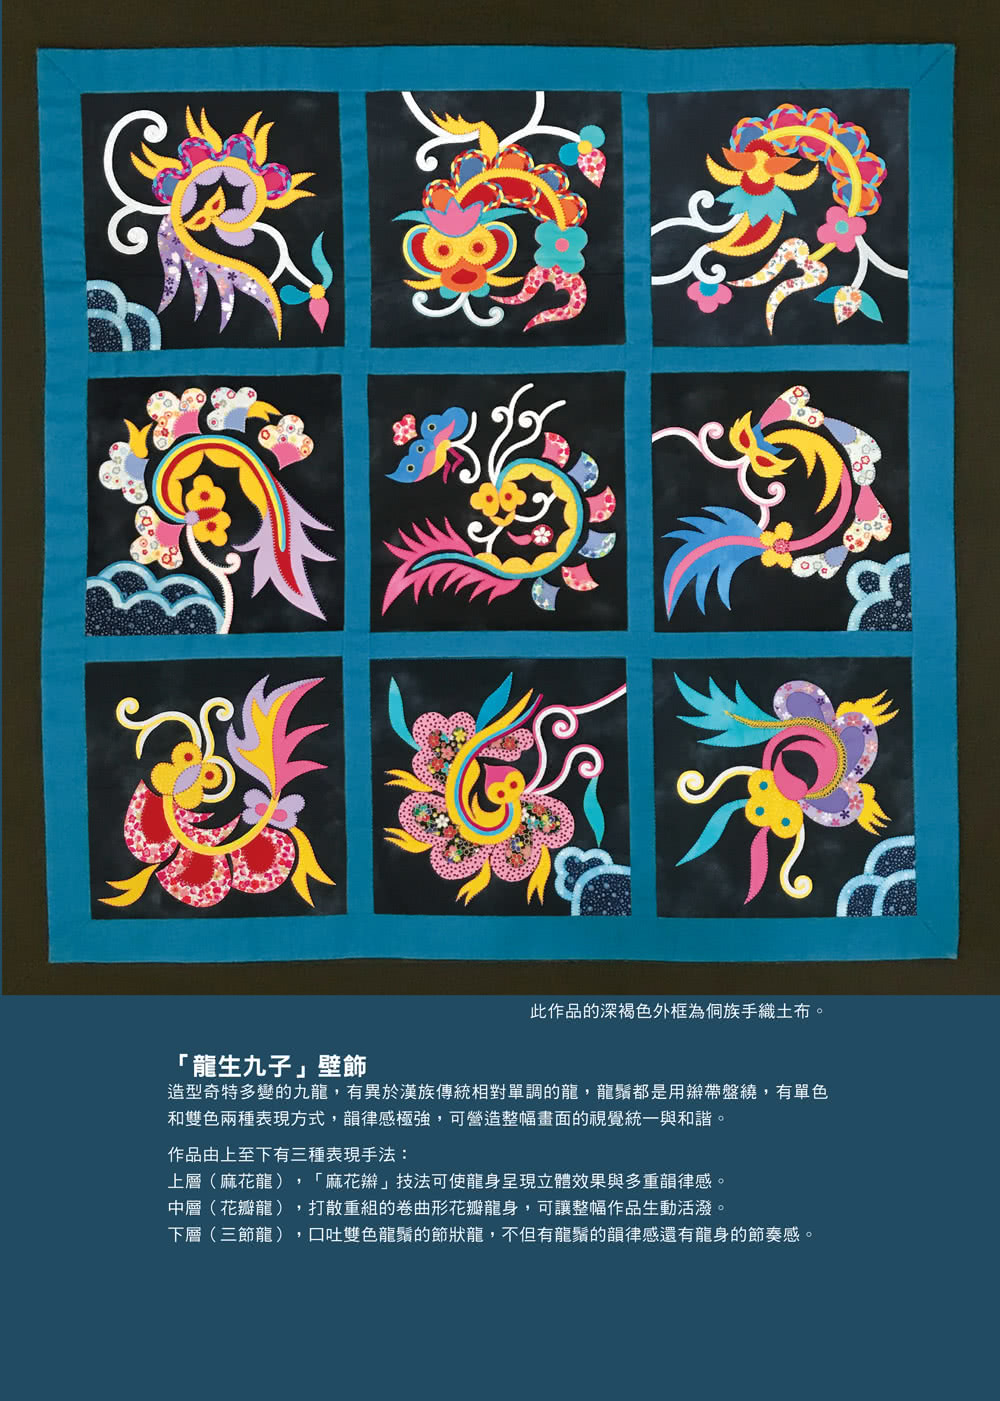 【中華拼布文化經典】中華傳統拼布經典Chinese traditional patchwork classic